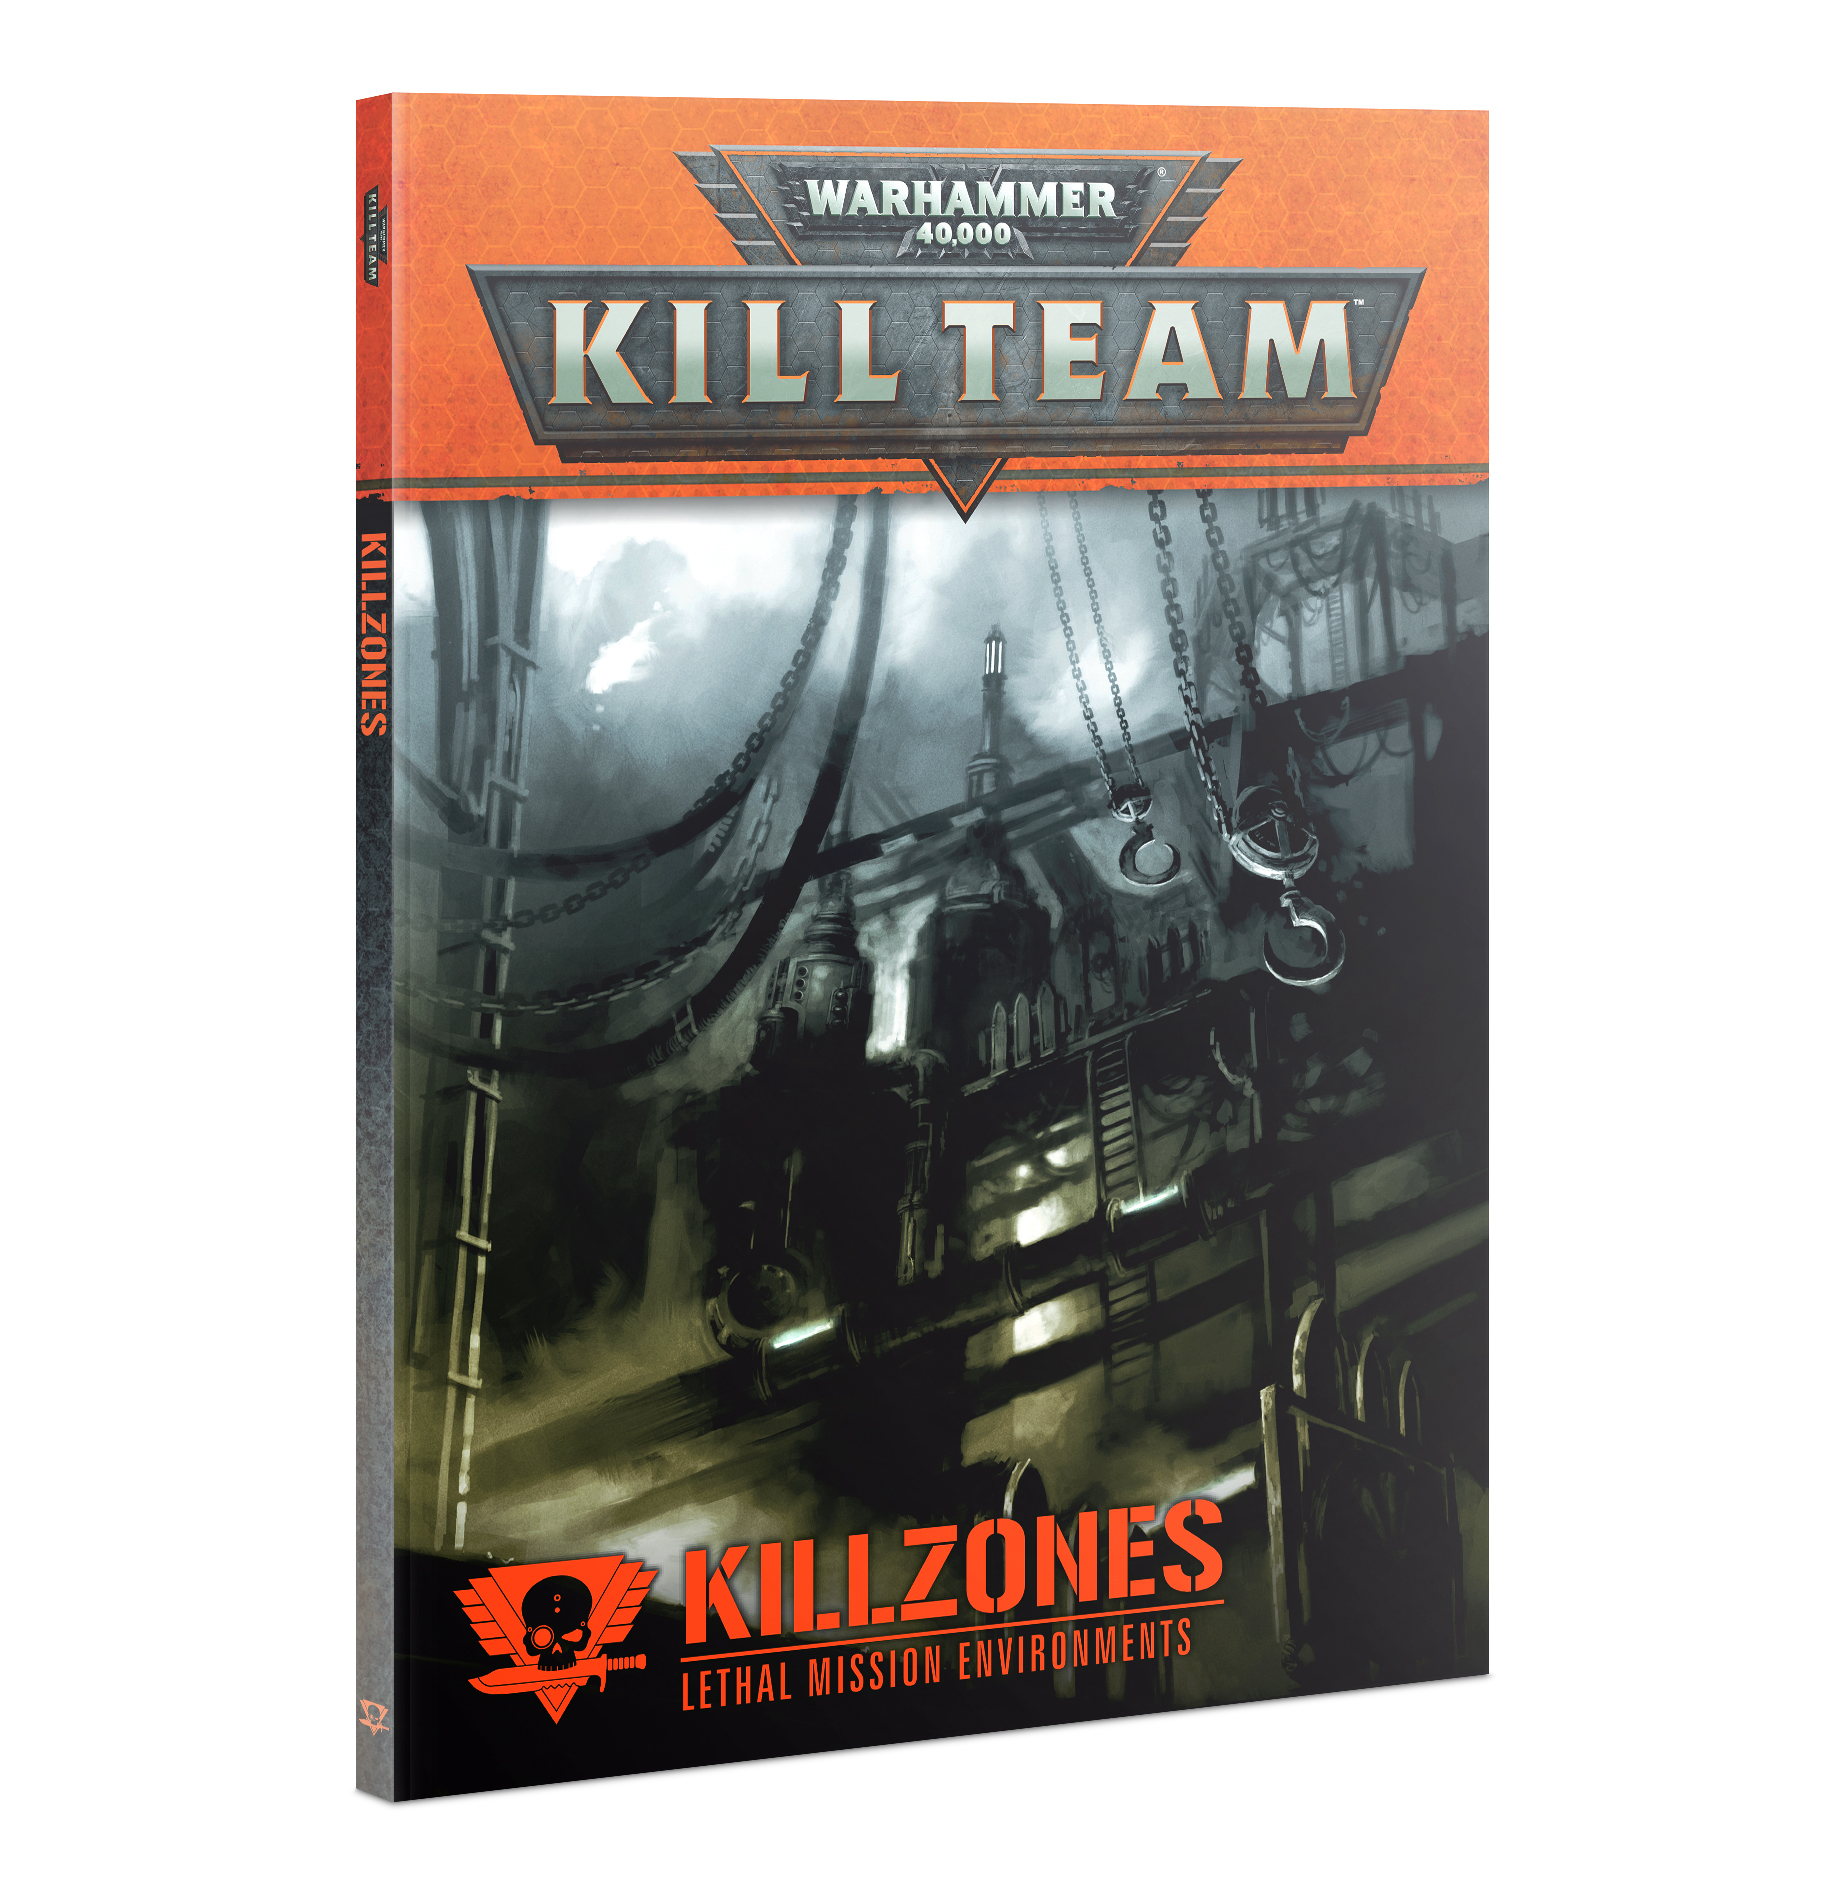 Warhammer 40,000: Kill Team (1st Ed): Killzones 